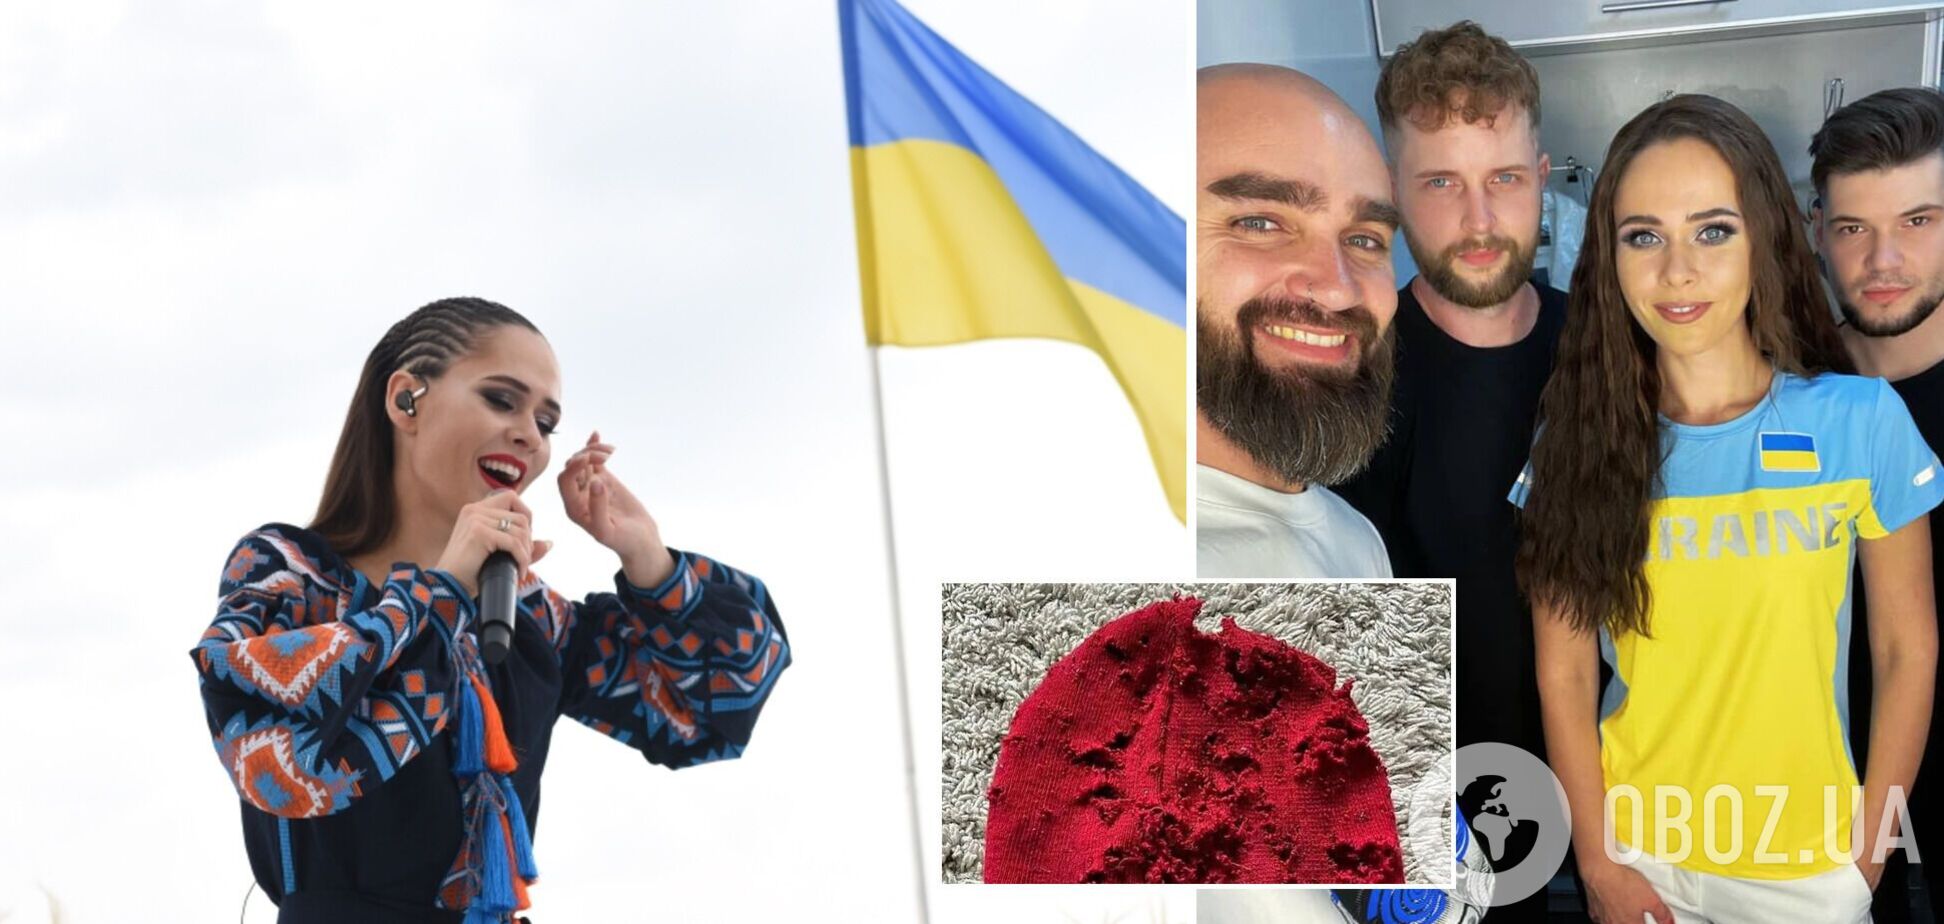 Юлия Санина впервые публично исполнила гимн Украины: а перед глазами – расстрелянная шапочка 13-летнего мальчика